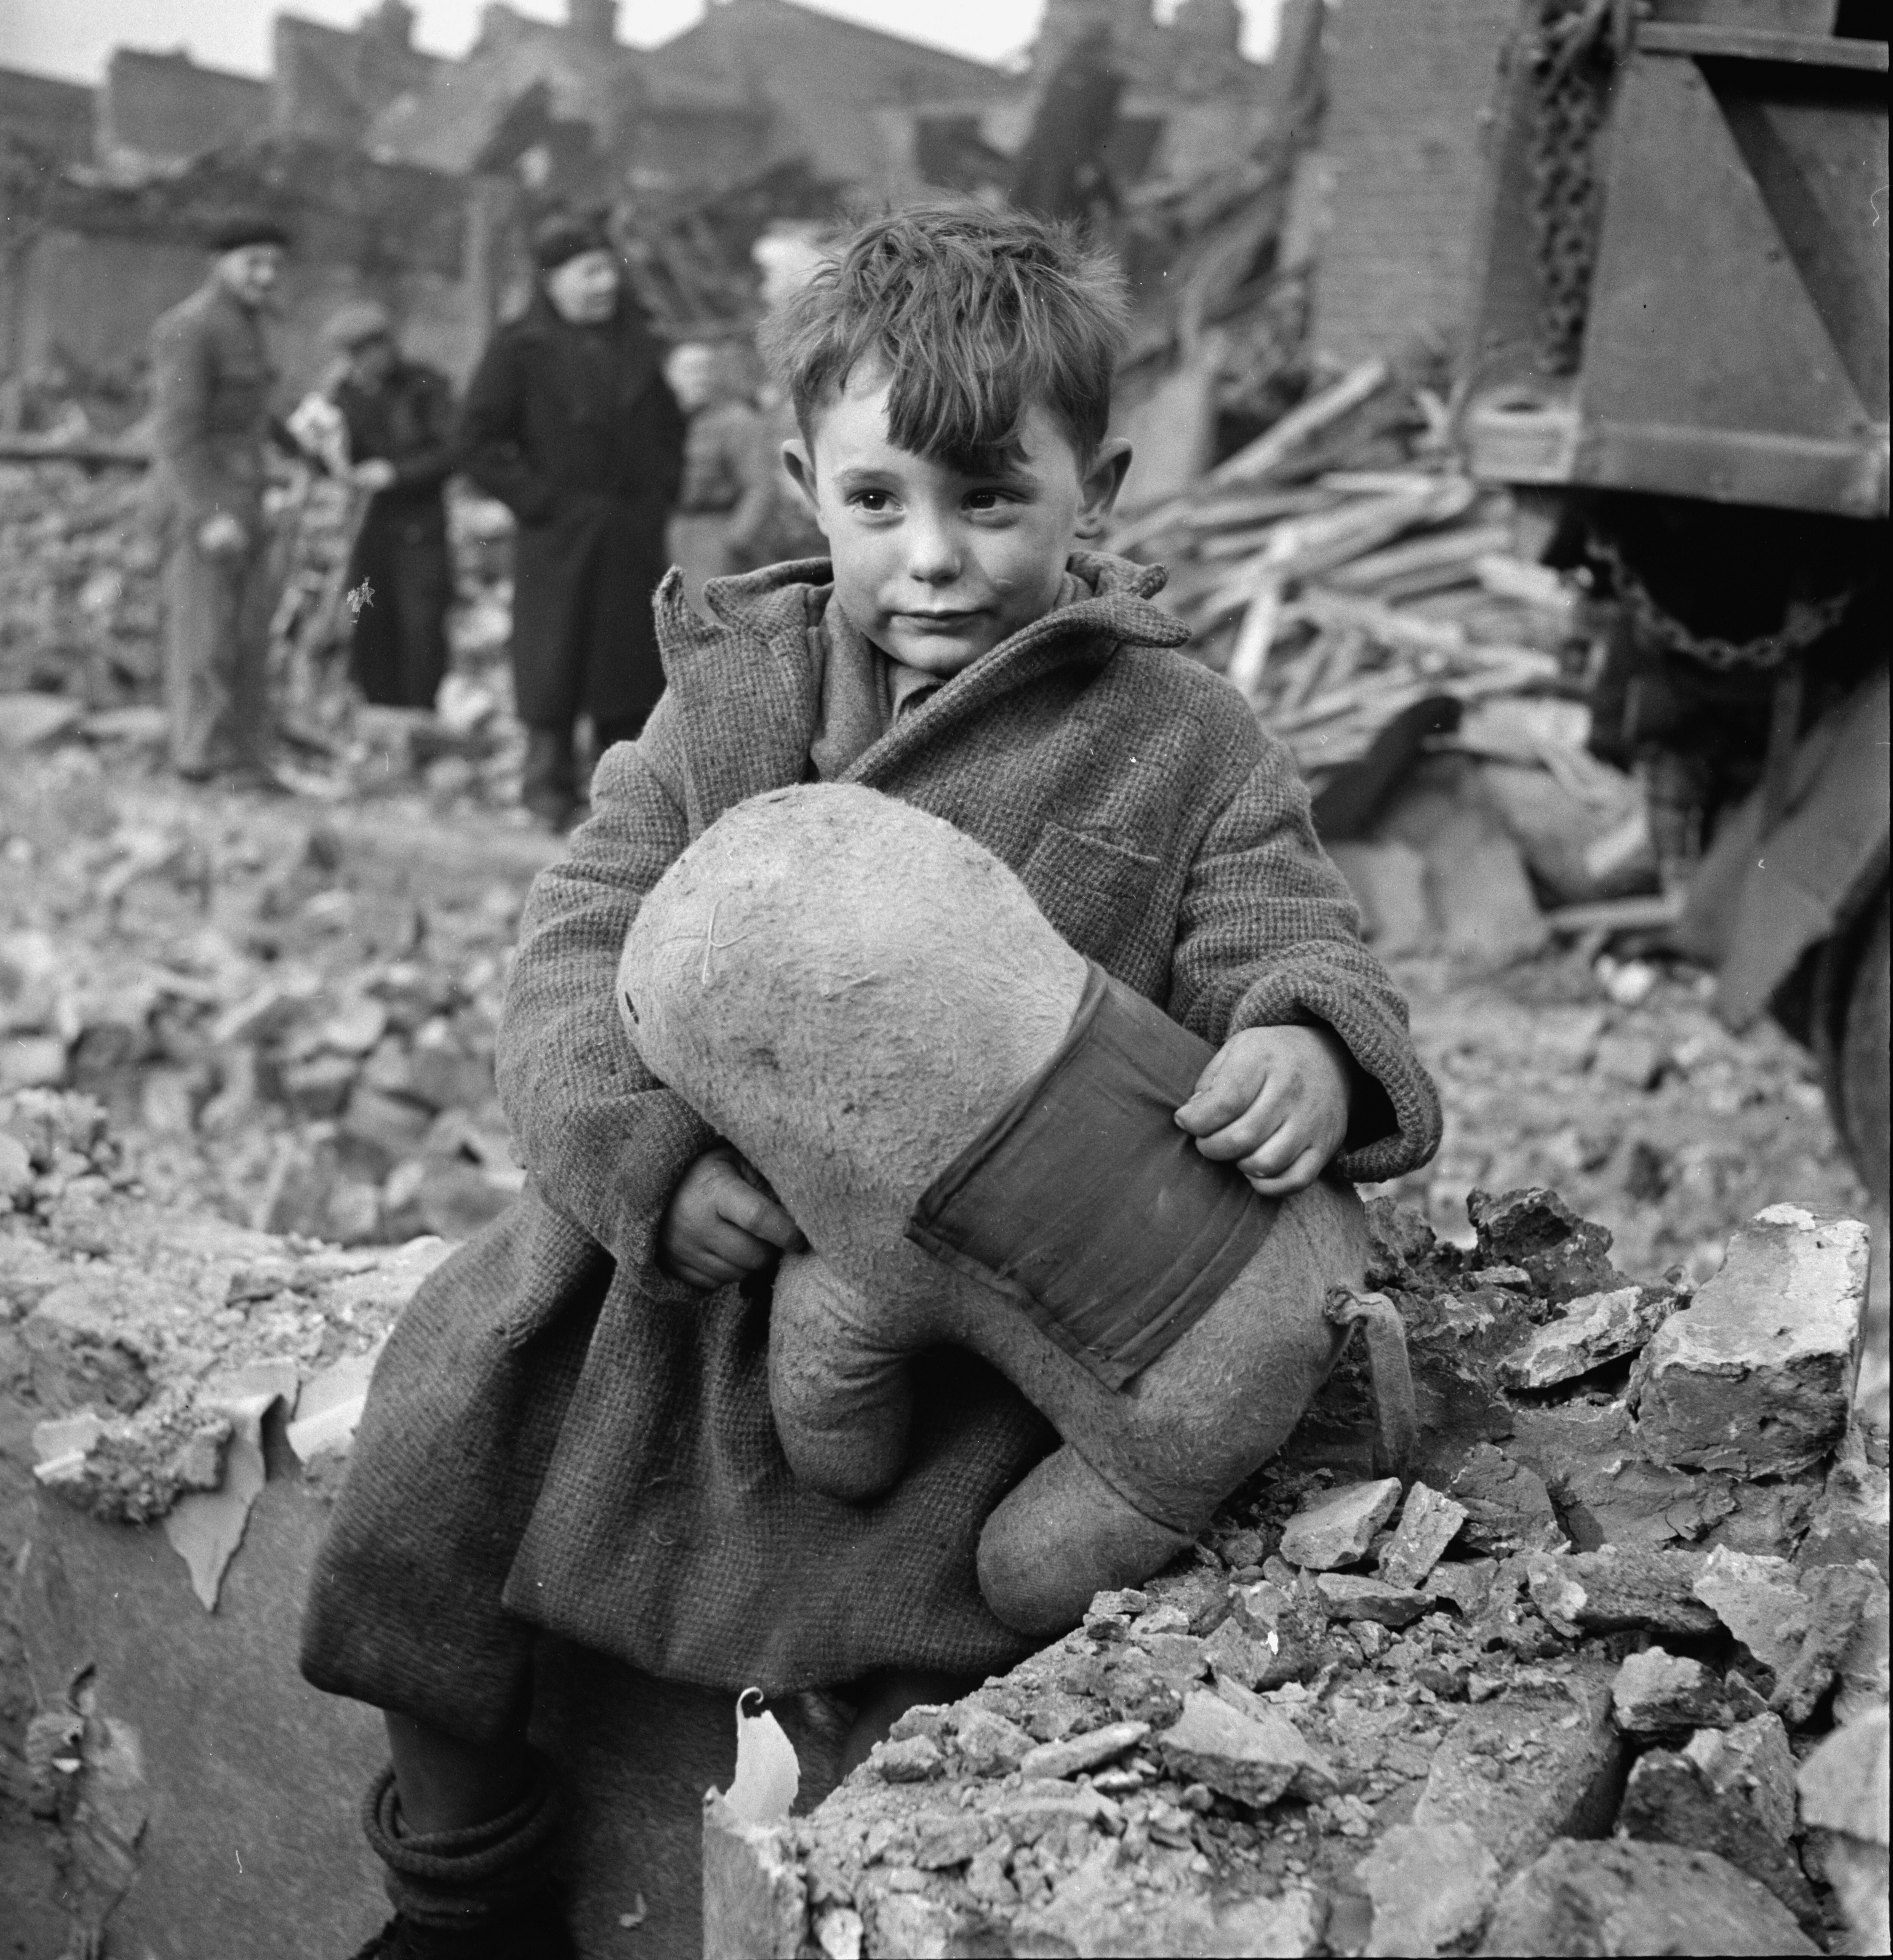 Брошенный мальчик с мягкой игрушкой среди руин после бомбардировки Лондона, 1945. Фотограф Тони Фрисселл